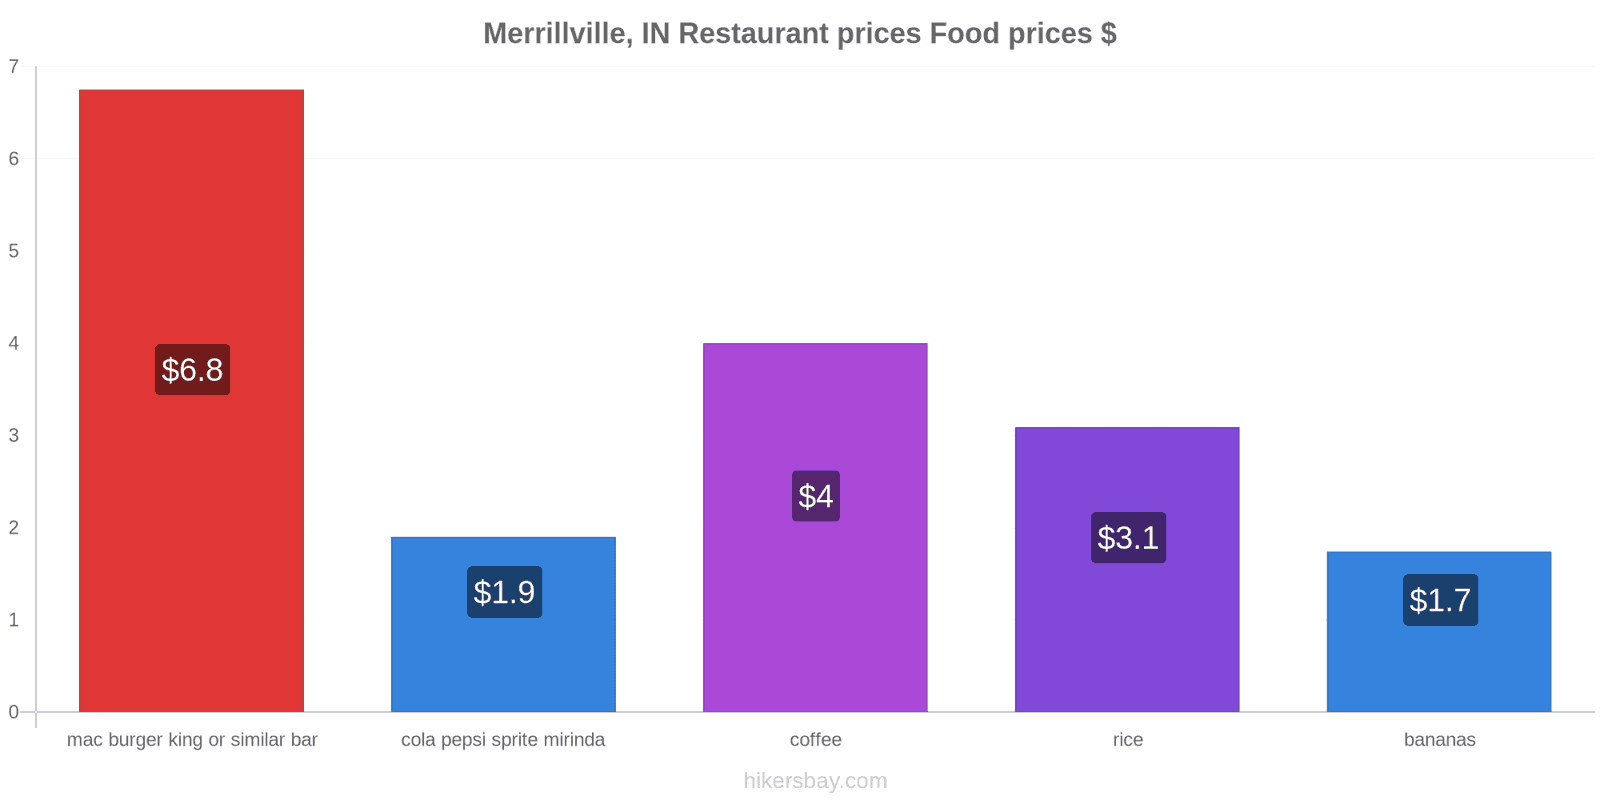 Merrillville, IN price changes hikersbay.com